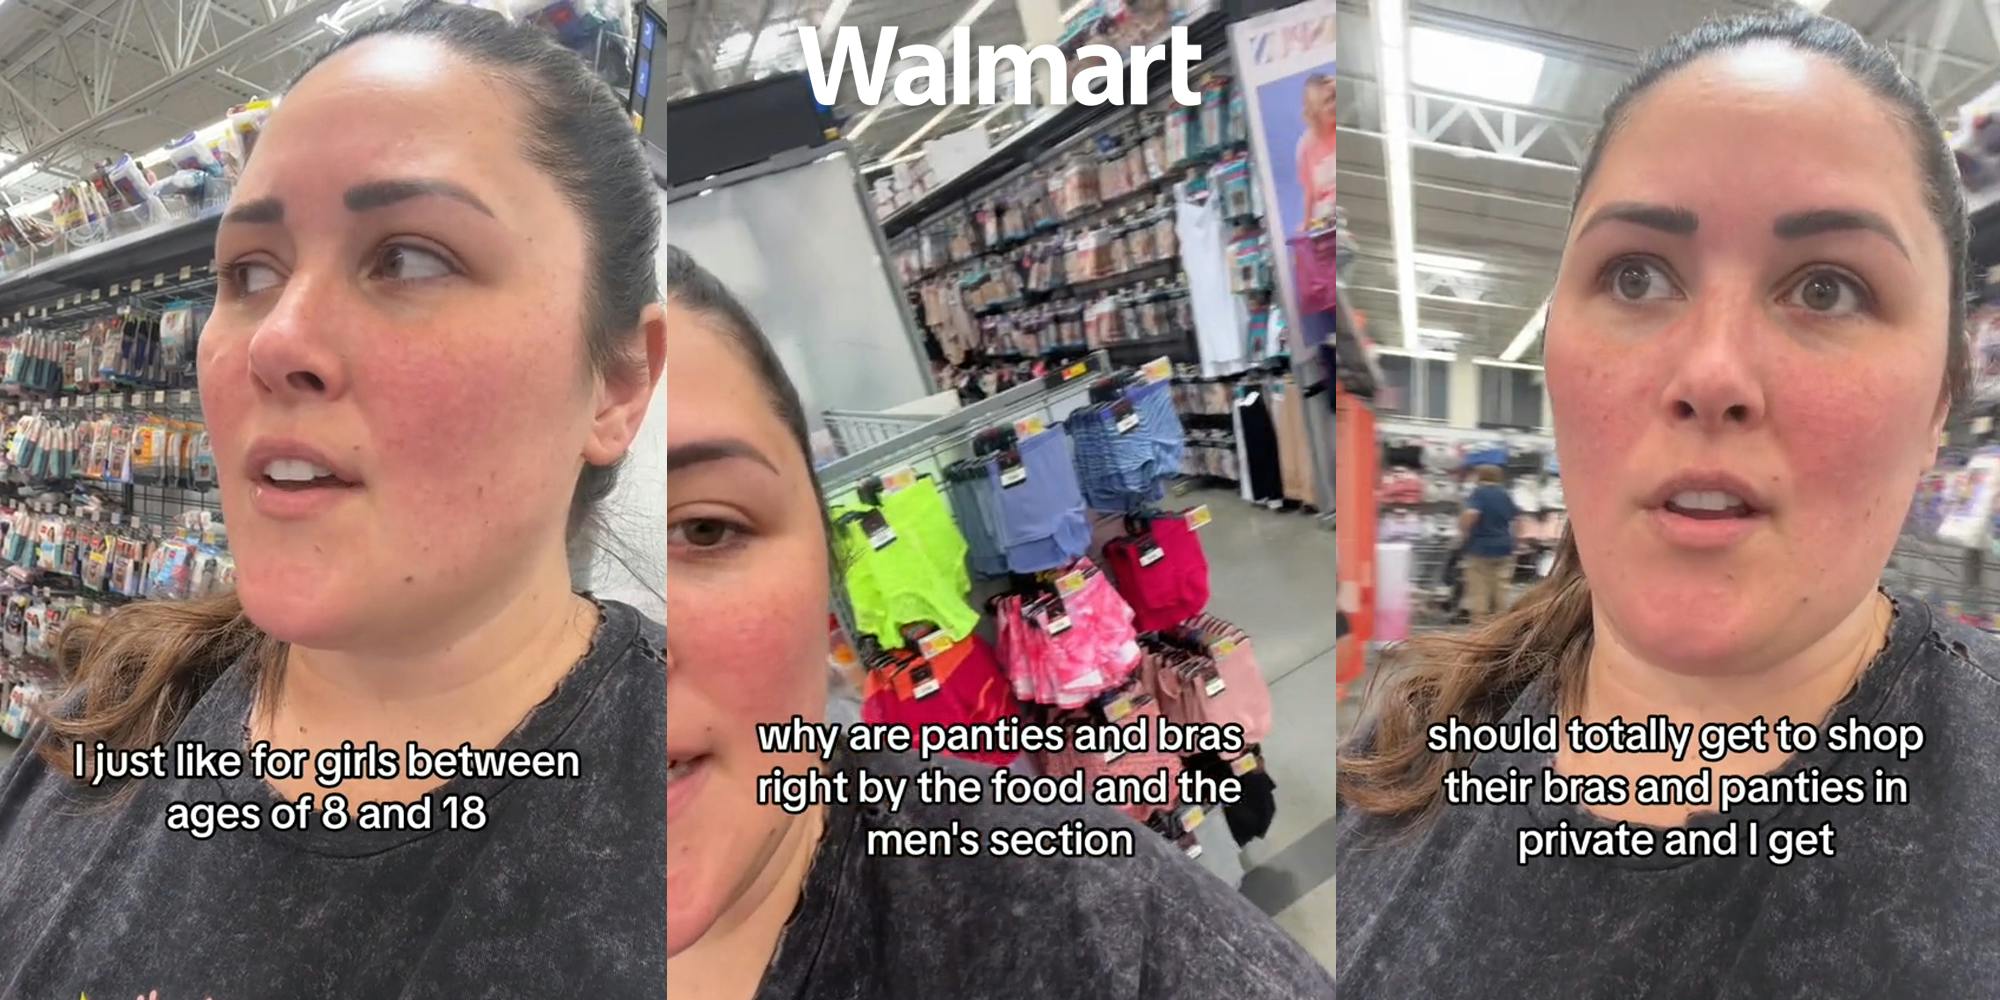 Customer Slams Walmart for Putting Girls' Bras Near Men's Section